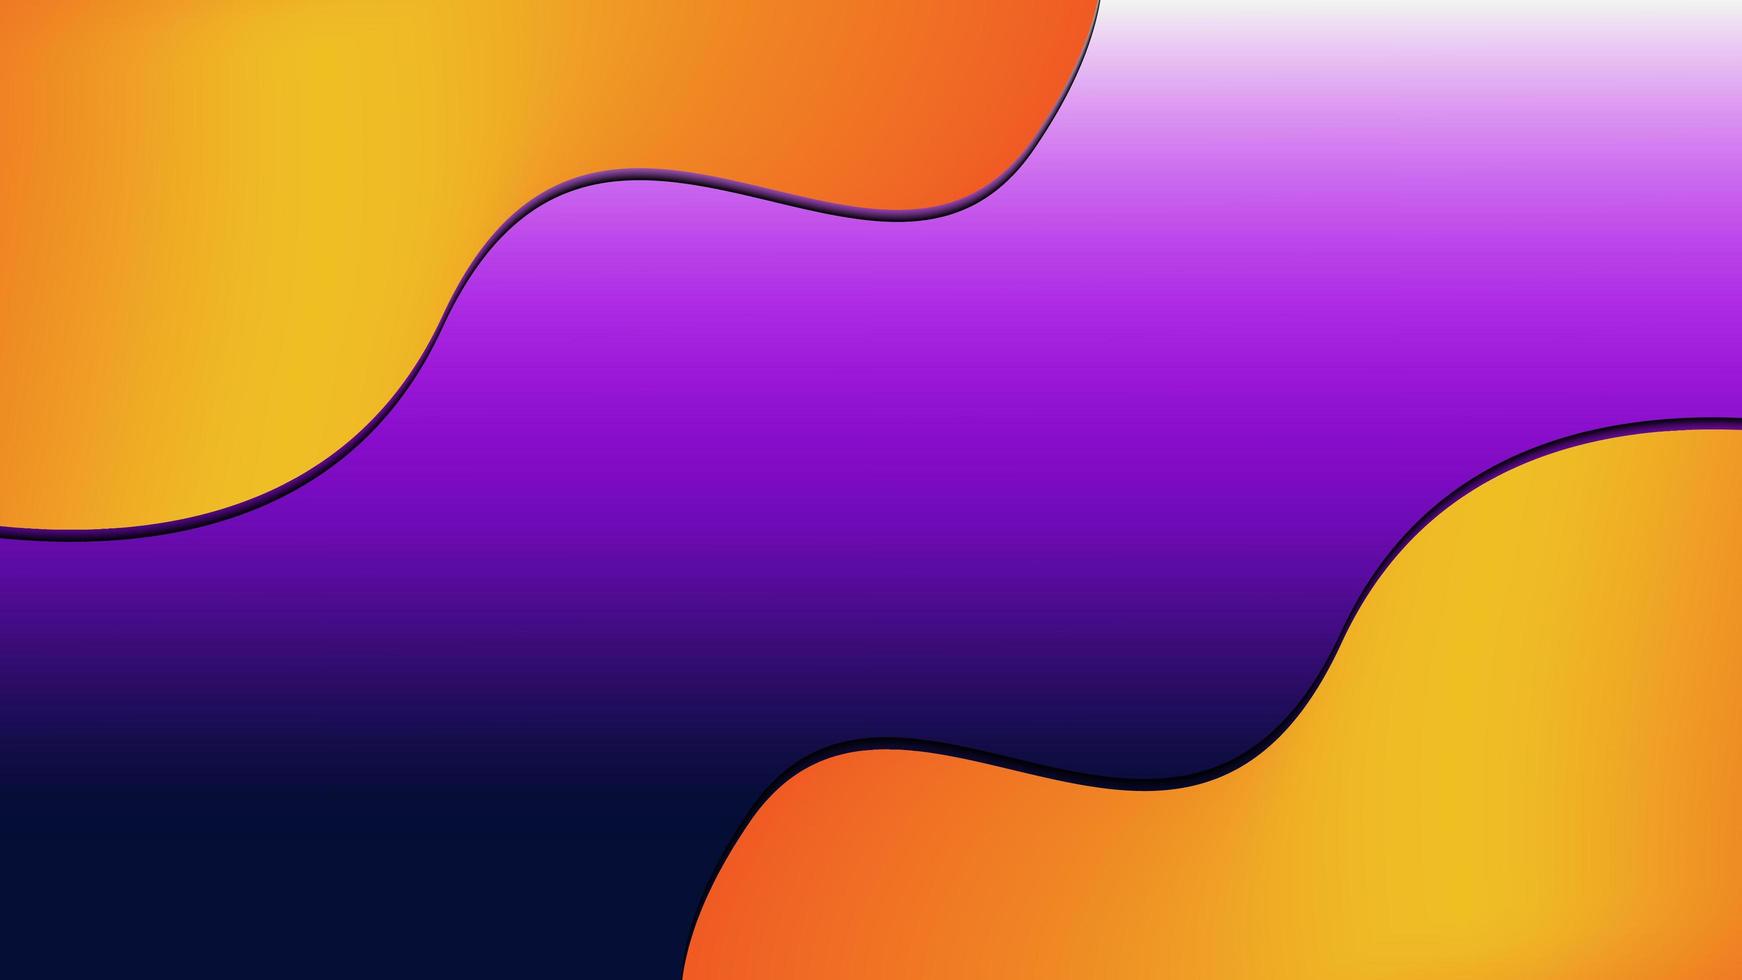 fond liquide avec violet et orange et un tas de liquide, adapté aux besoins de conception, d'affichage, de site Web, d'interface utilisateur et autres photo